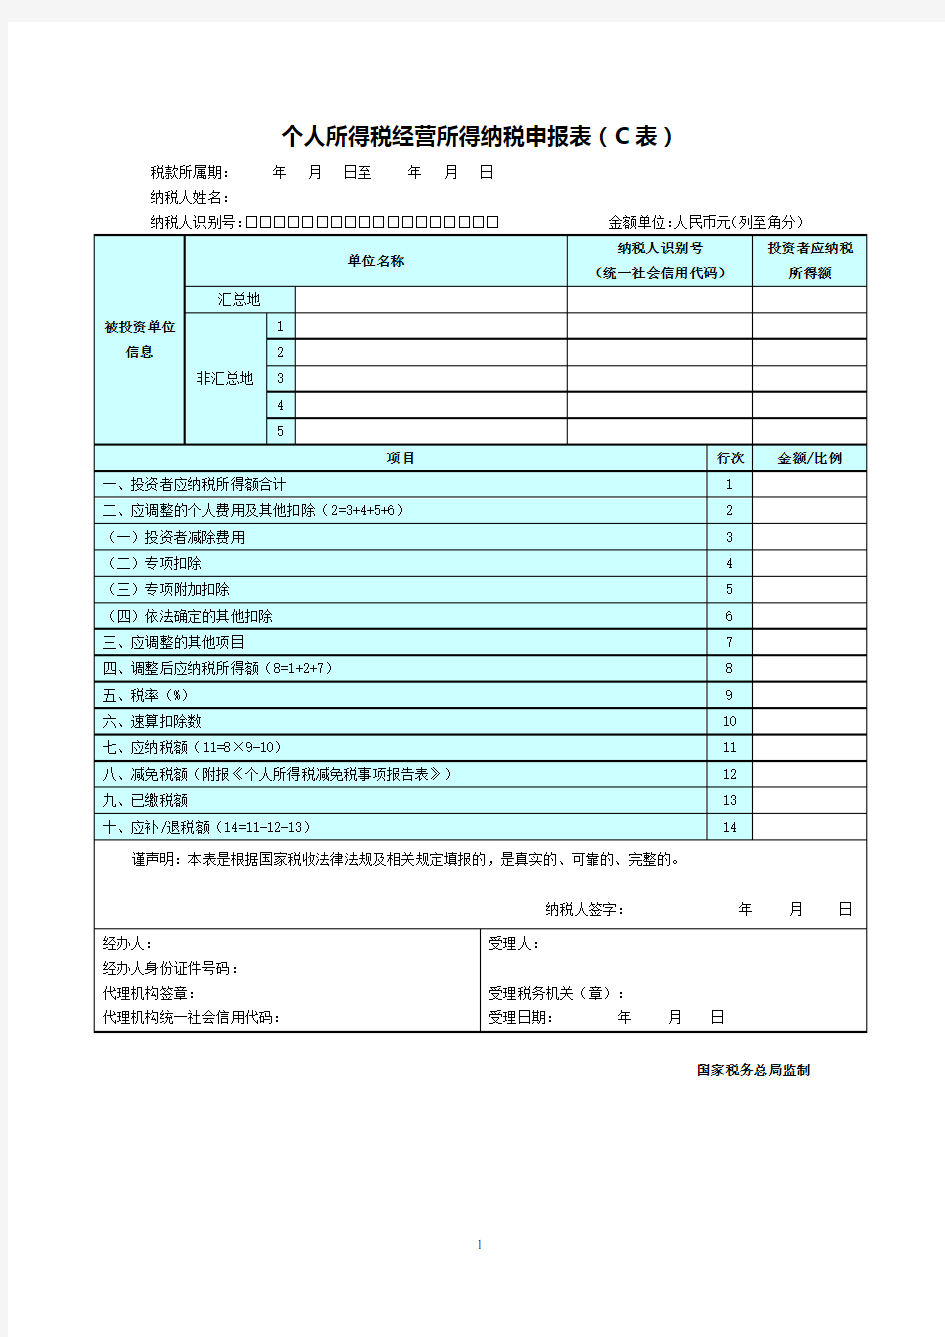 个人所得税经营所得纳税申报表(C表)2019年